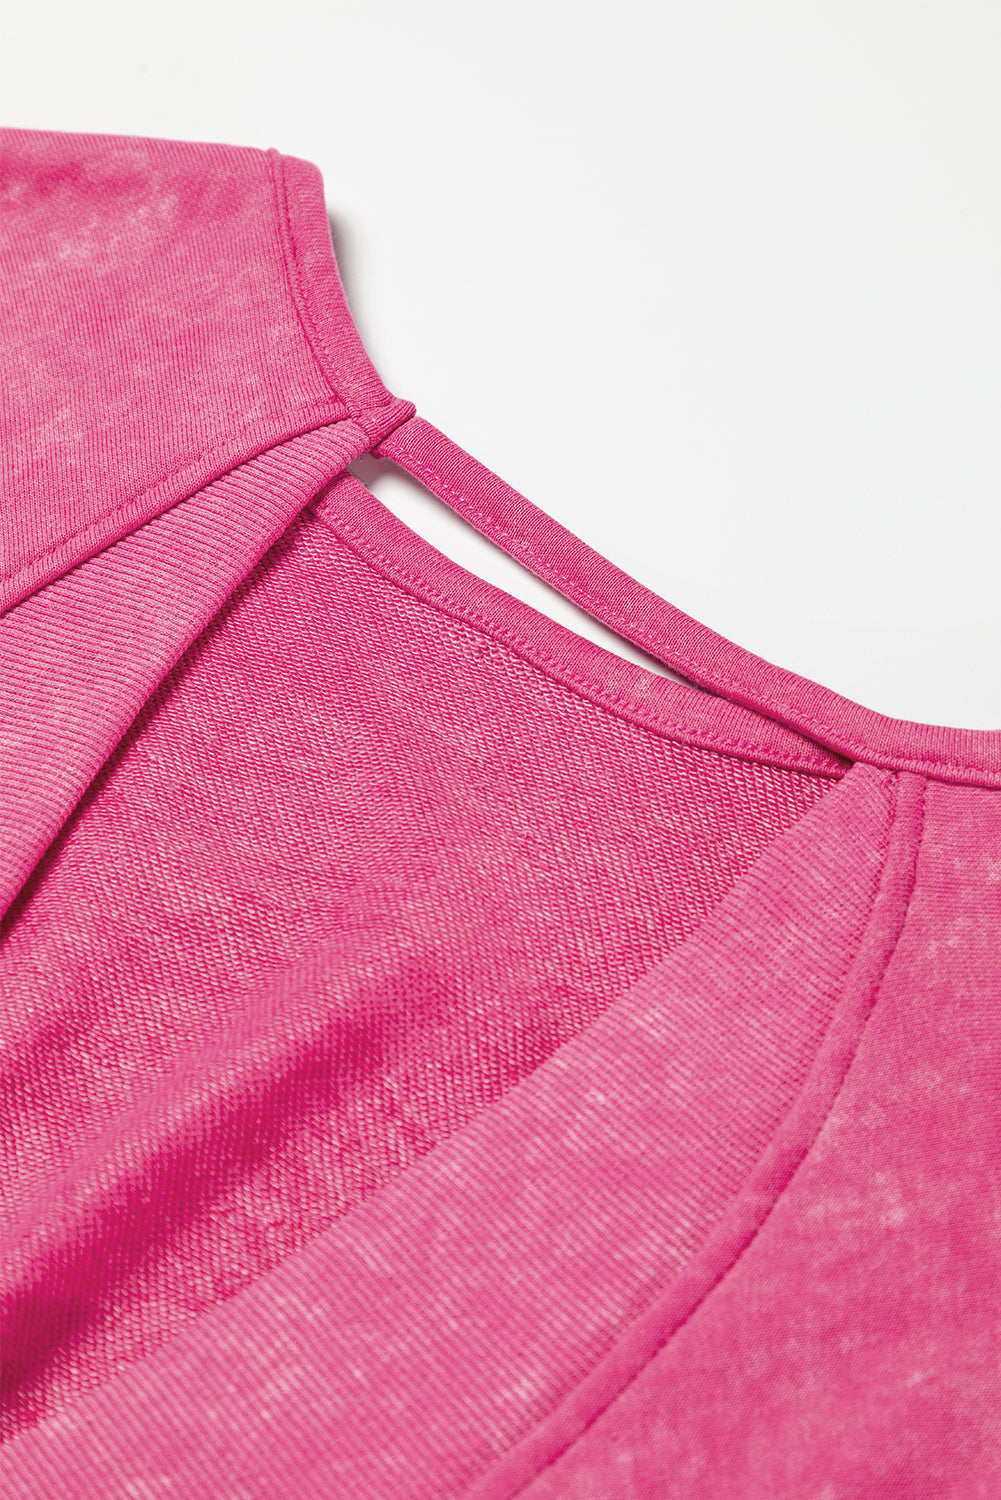 Rose Acid Wash V-shape Open Back Sweatshirt